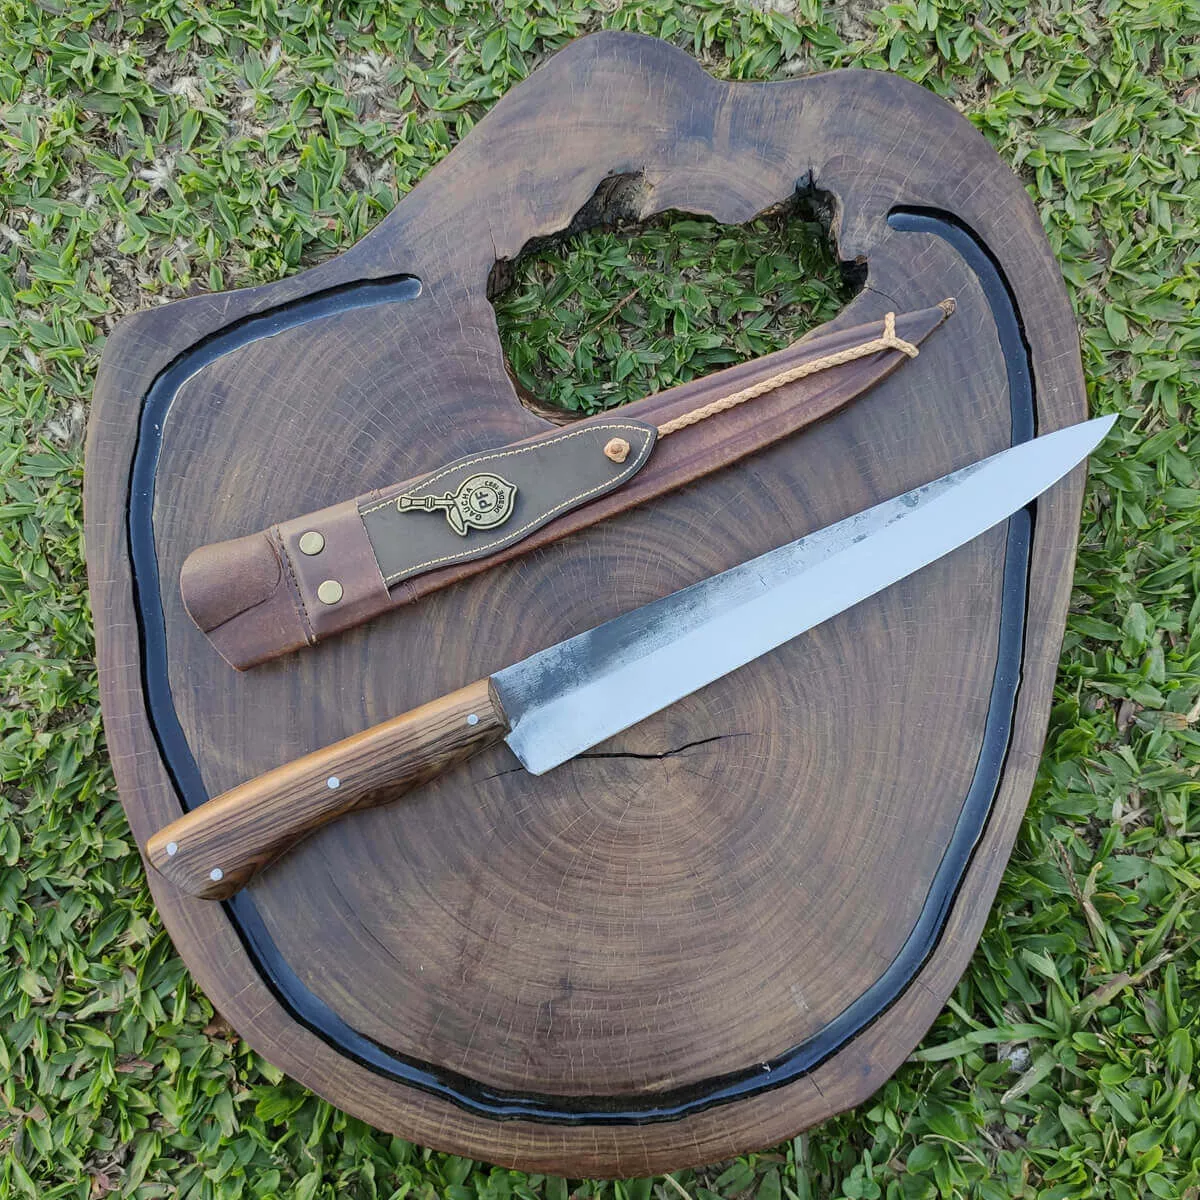 Primeira imagem para pesquisa de faca antiga usada